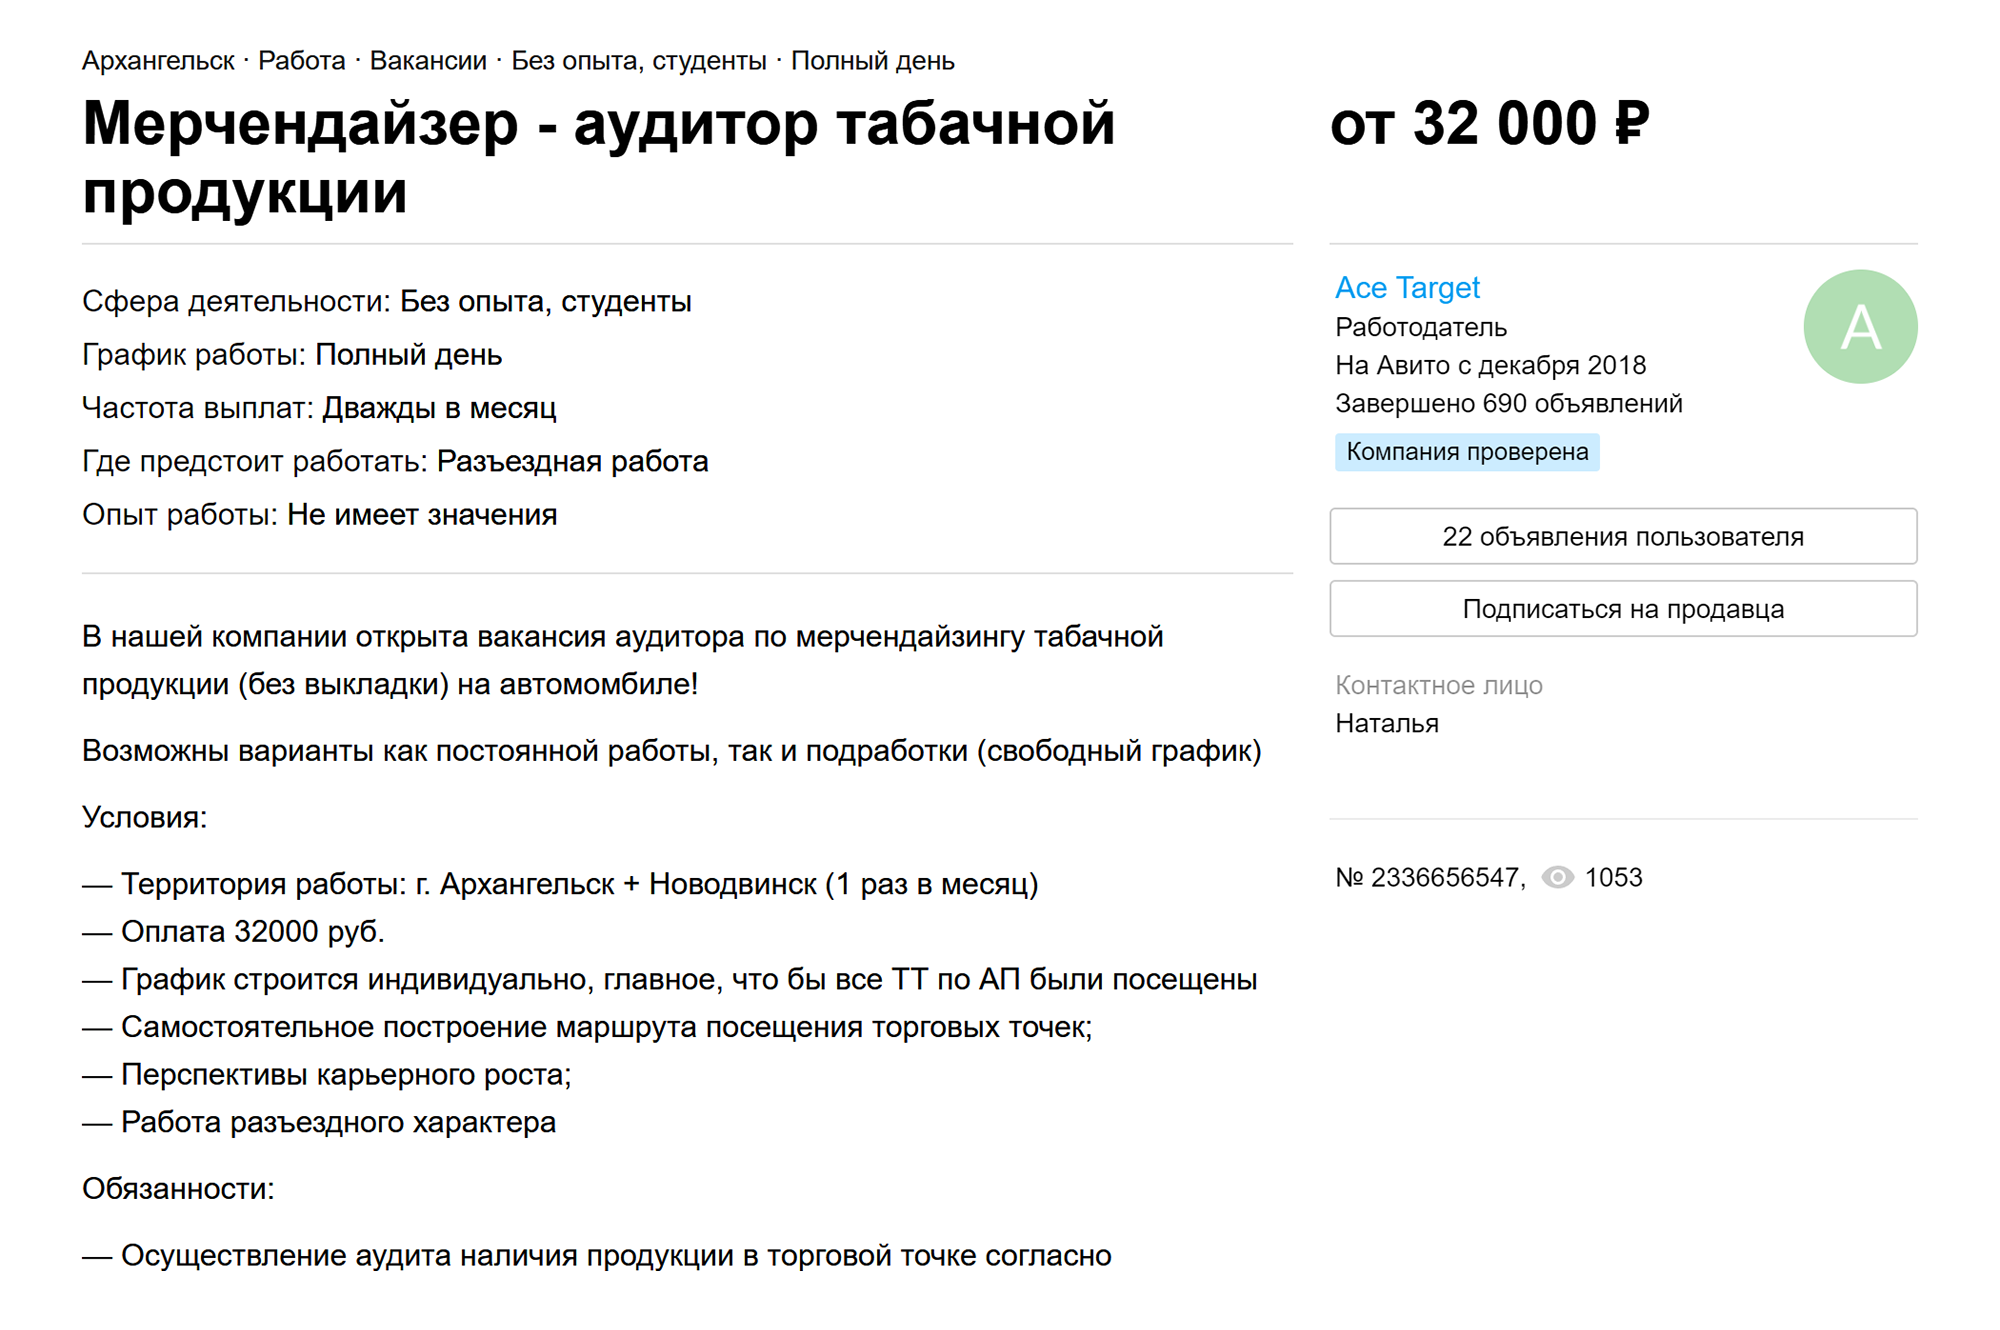 «Филип Моррис» сейчас не набирает сотрудников. Но так выглядит аналогичное объявление о поиске мерчандайзера. Источник: avito.ru